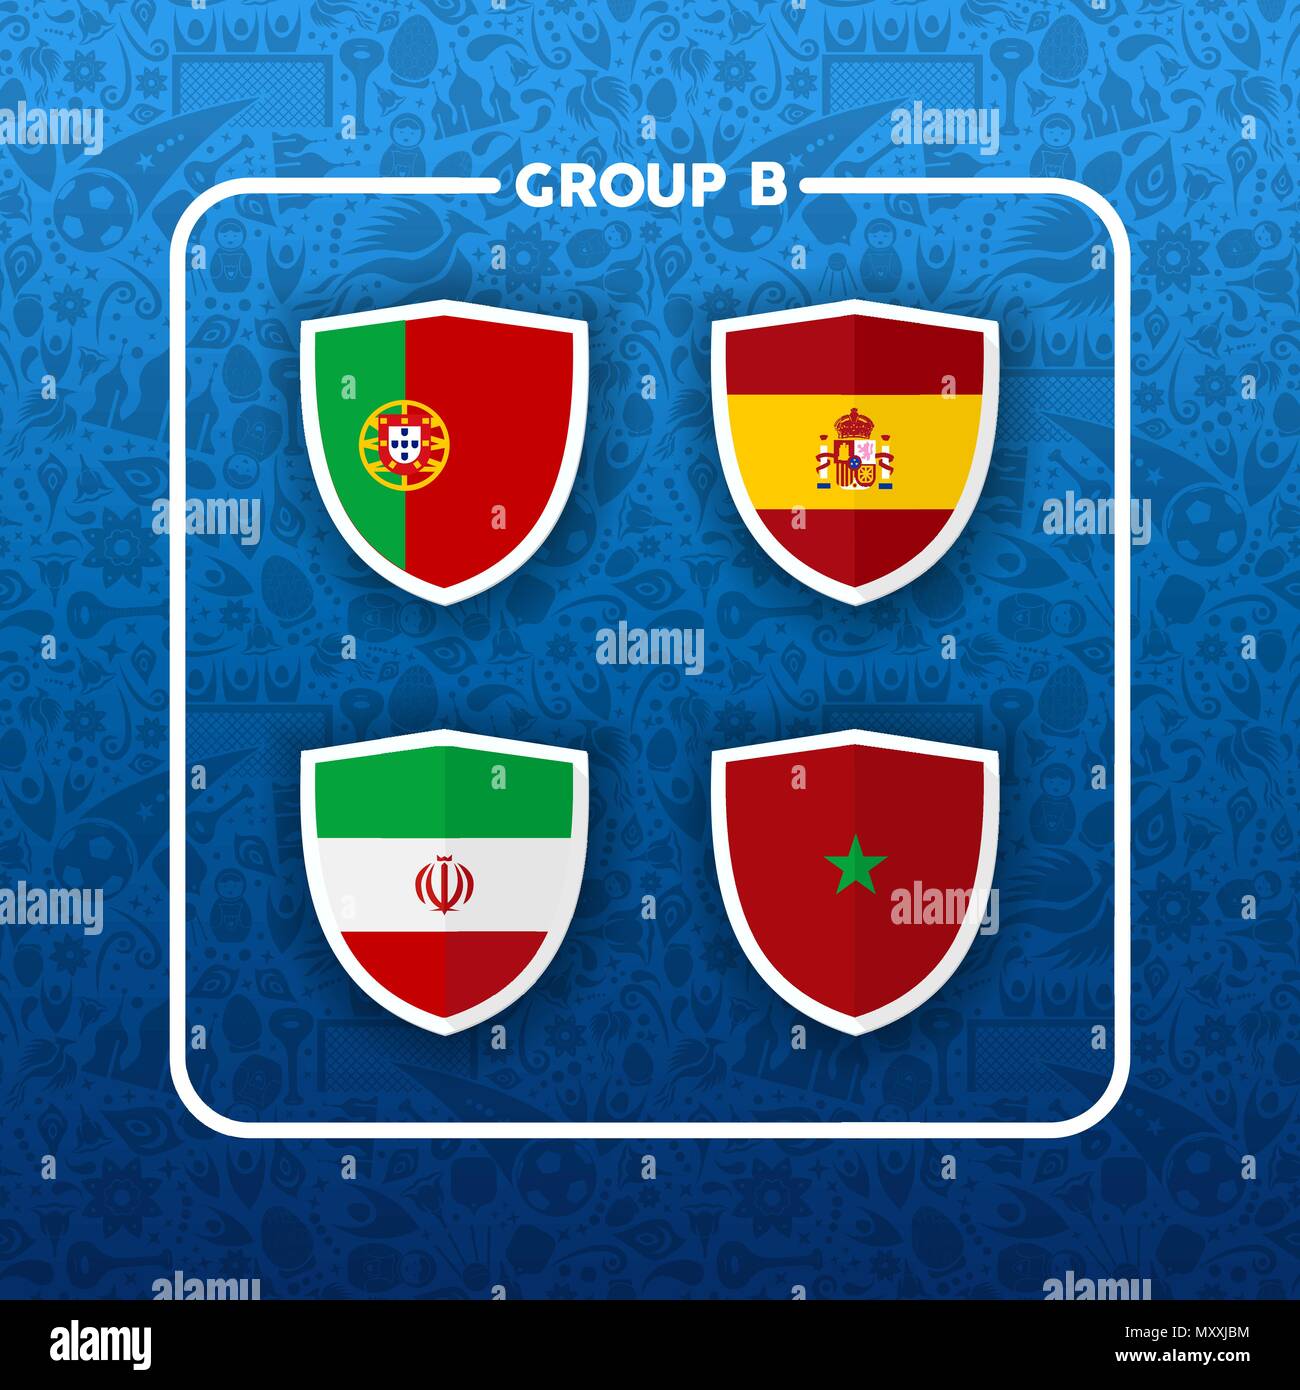 Campionato di calcio programma degli eventi per il 2018. Gruppo B paese elenco team di partita di calcio giochi. Include il Portogallo, Iran, Spagna e Marocco. EPS10 vect Illustrazione Vettoriale